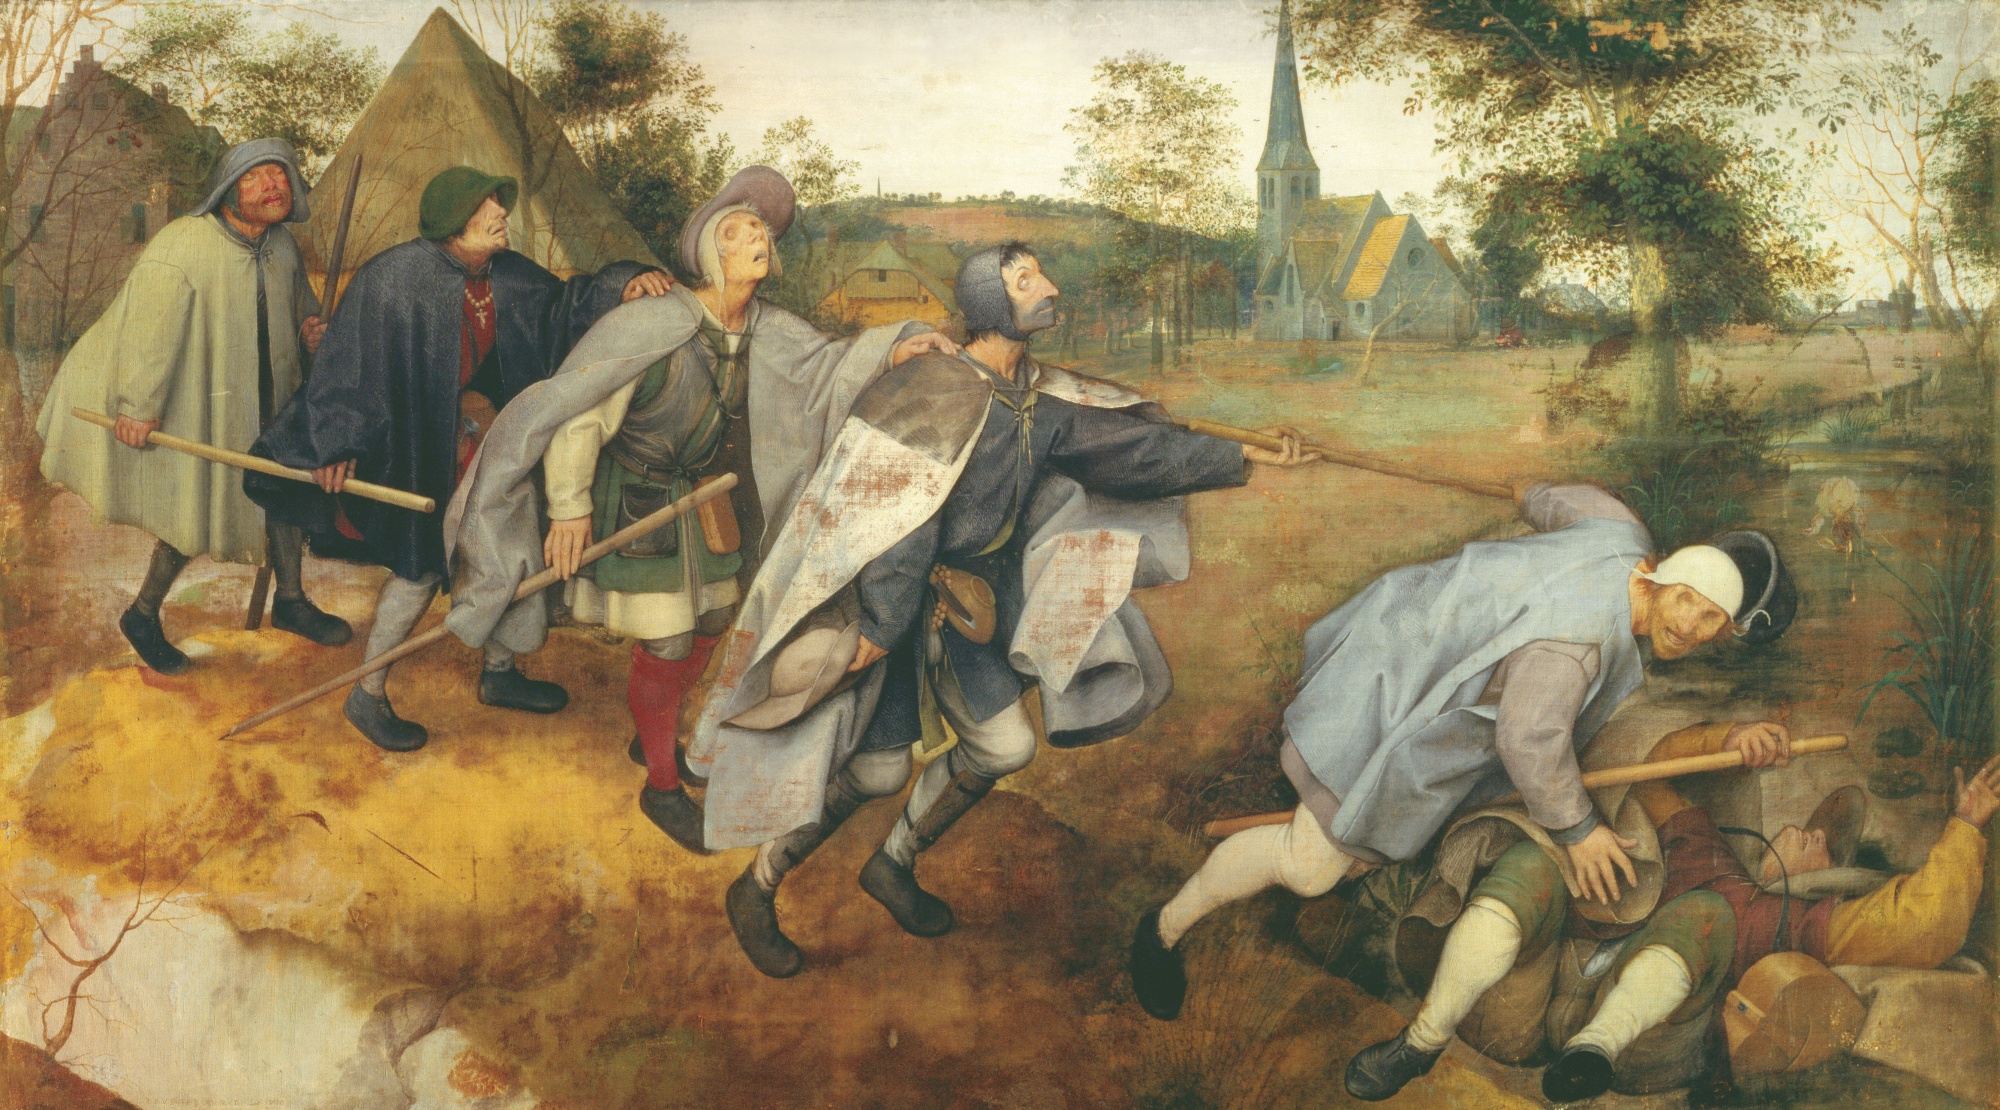 Pieter_Bruegel_the_Elder_%281568%29_The_Blind_Leading_the_Blind.jpg